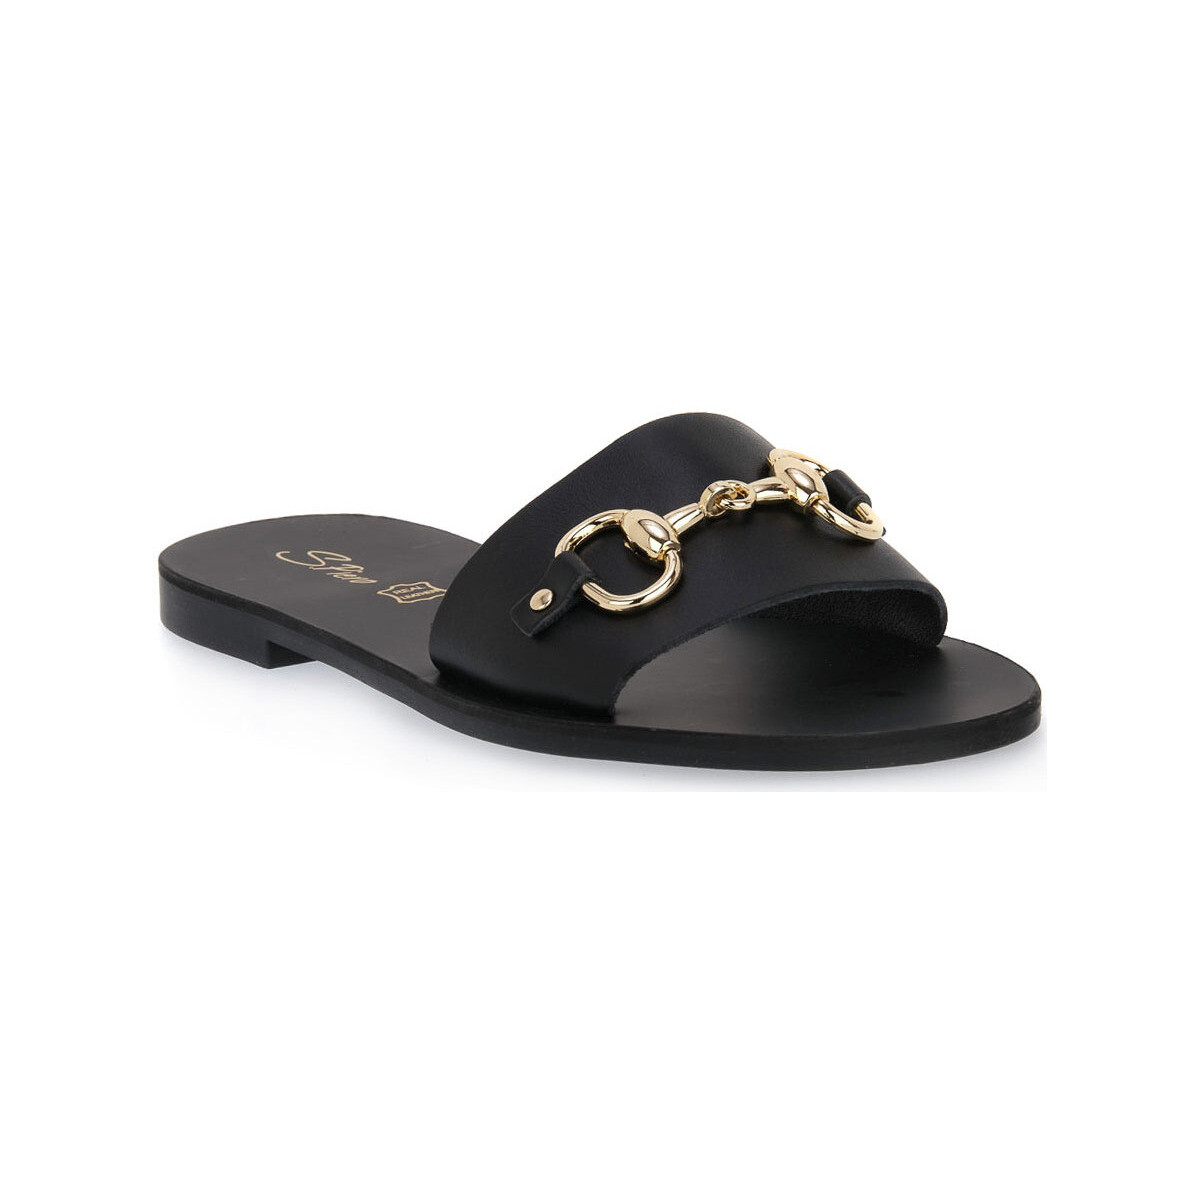 Παπούτσια Γυναίκα Τσόκαρα S.piero BLACK TR SOLE Black